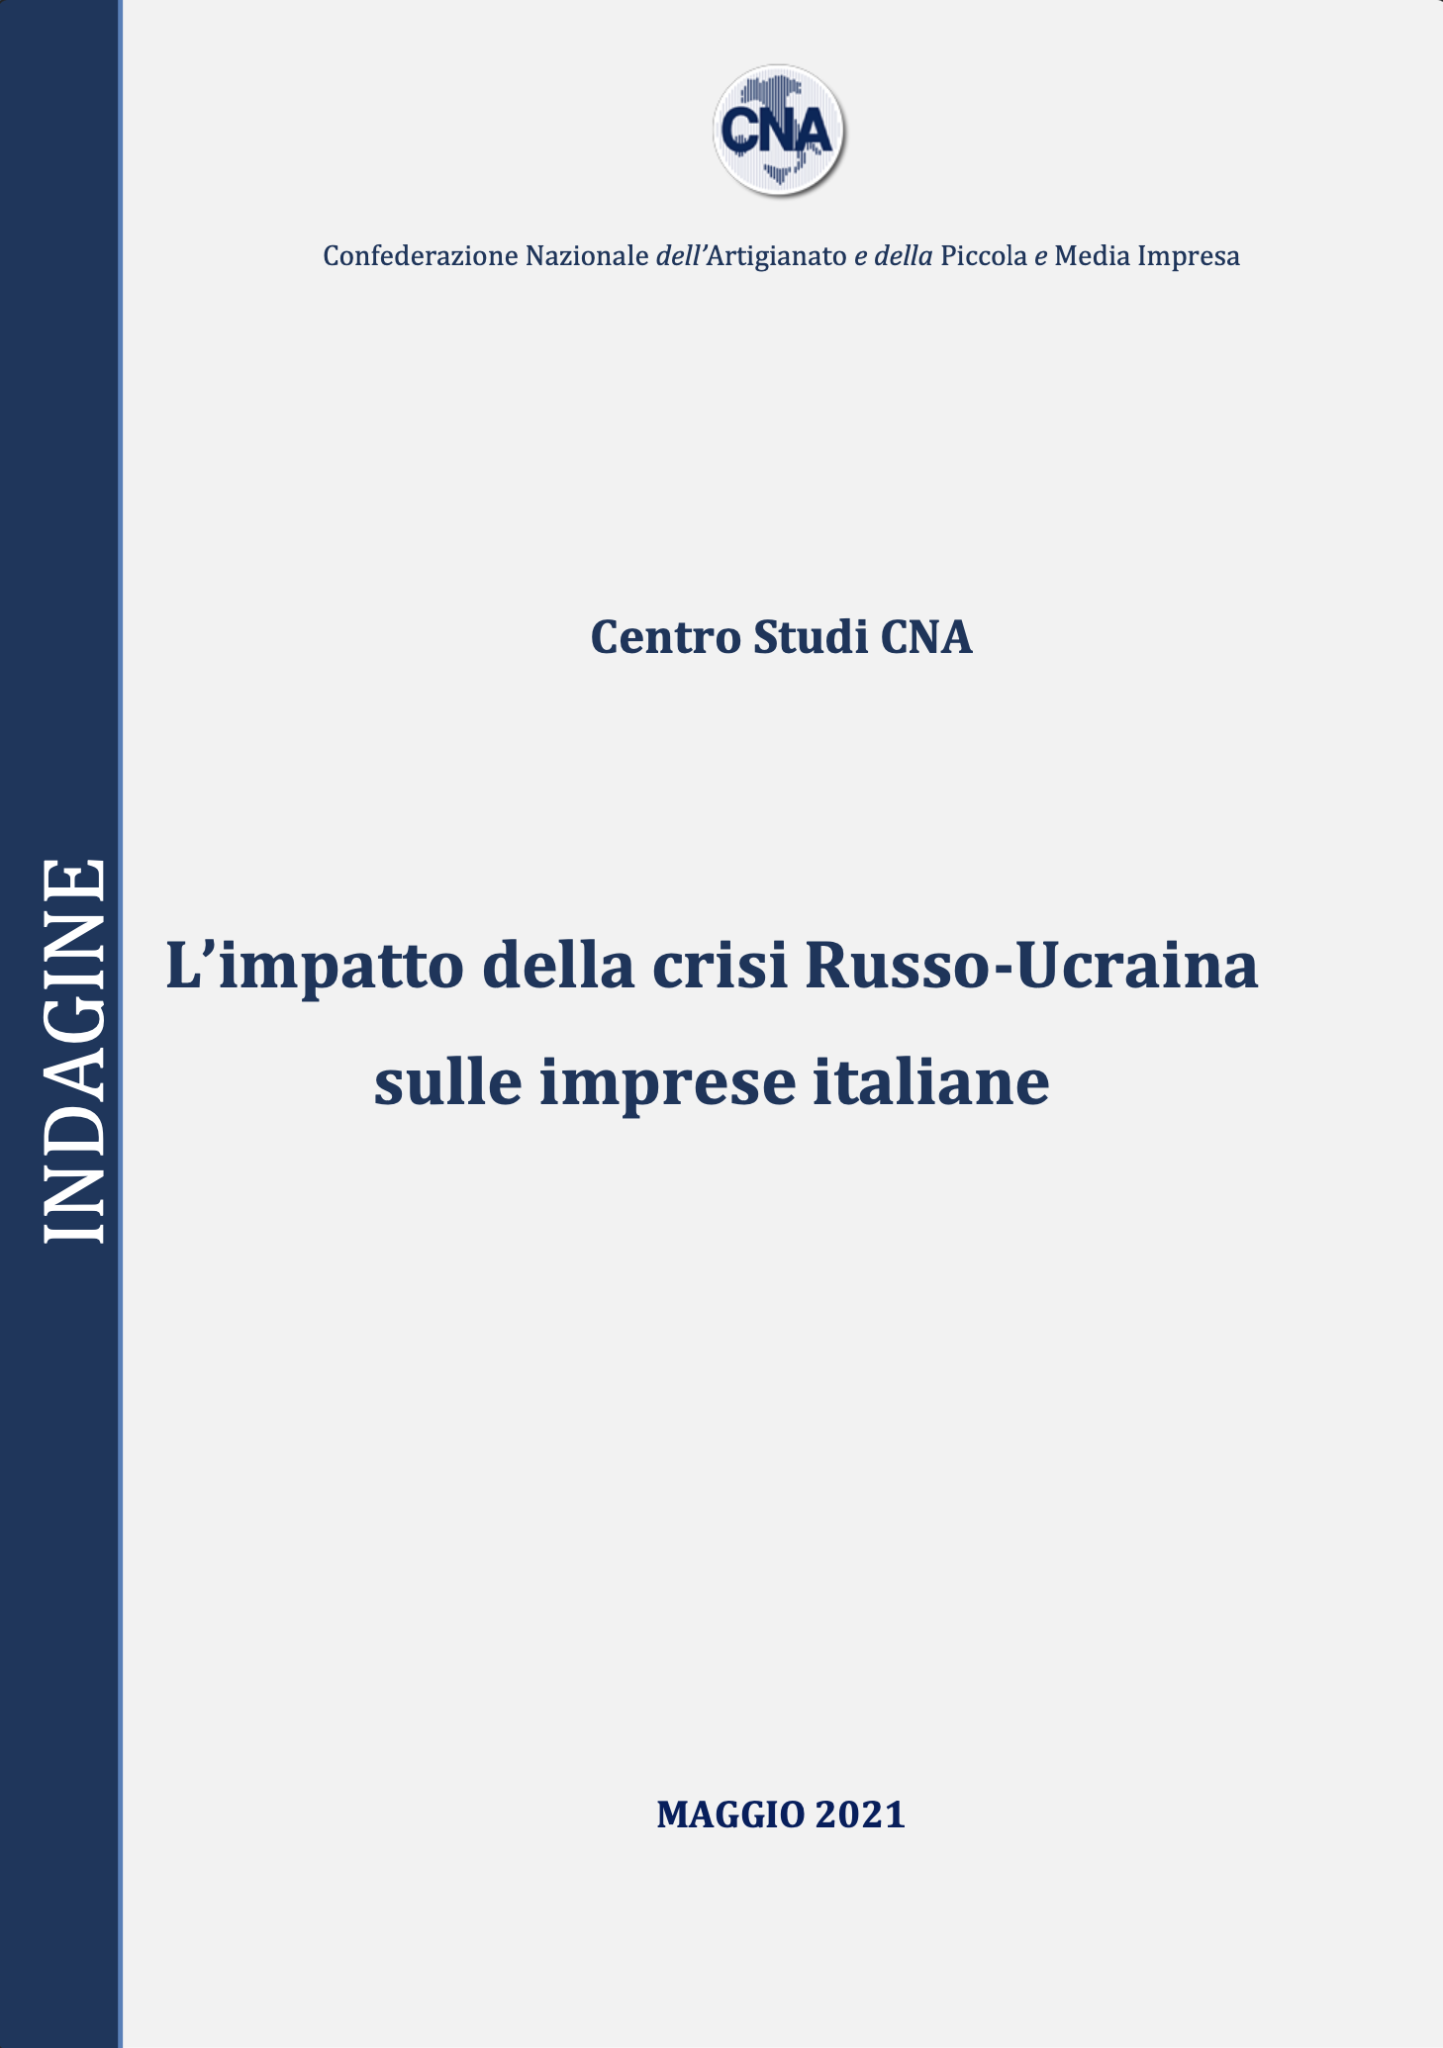 L’impatto della crisi Russo-Ucraina sulle imprese italiane